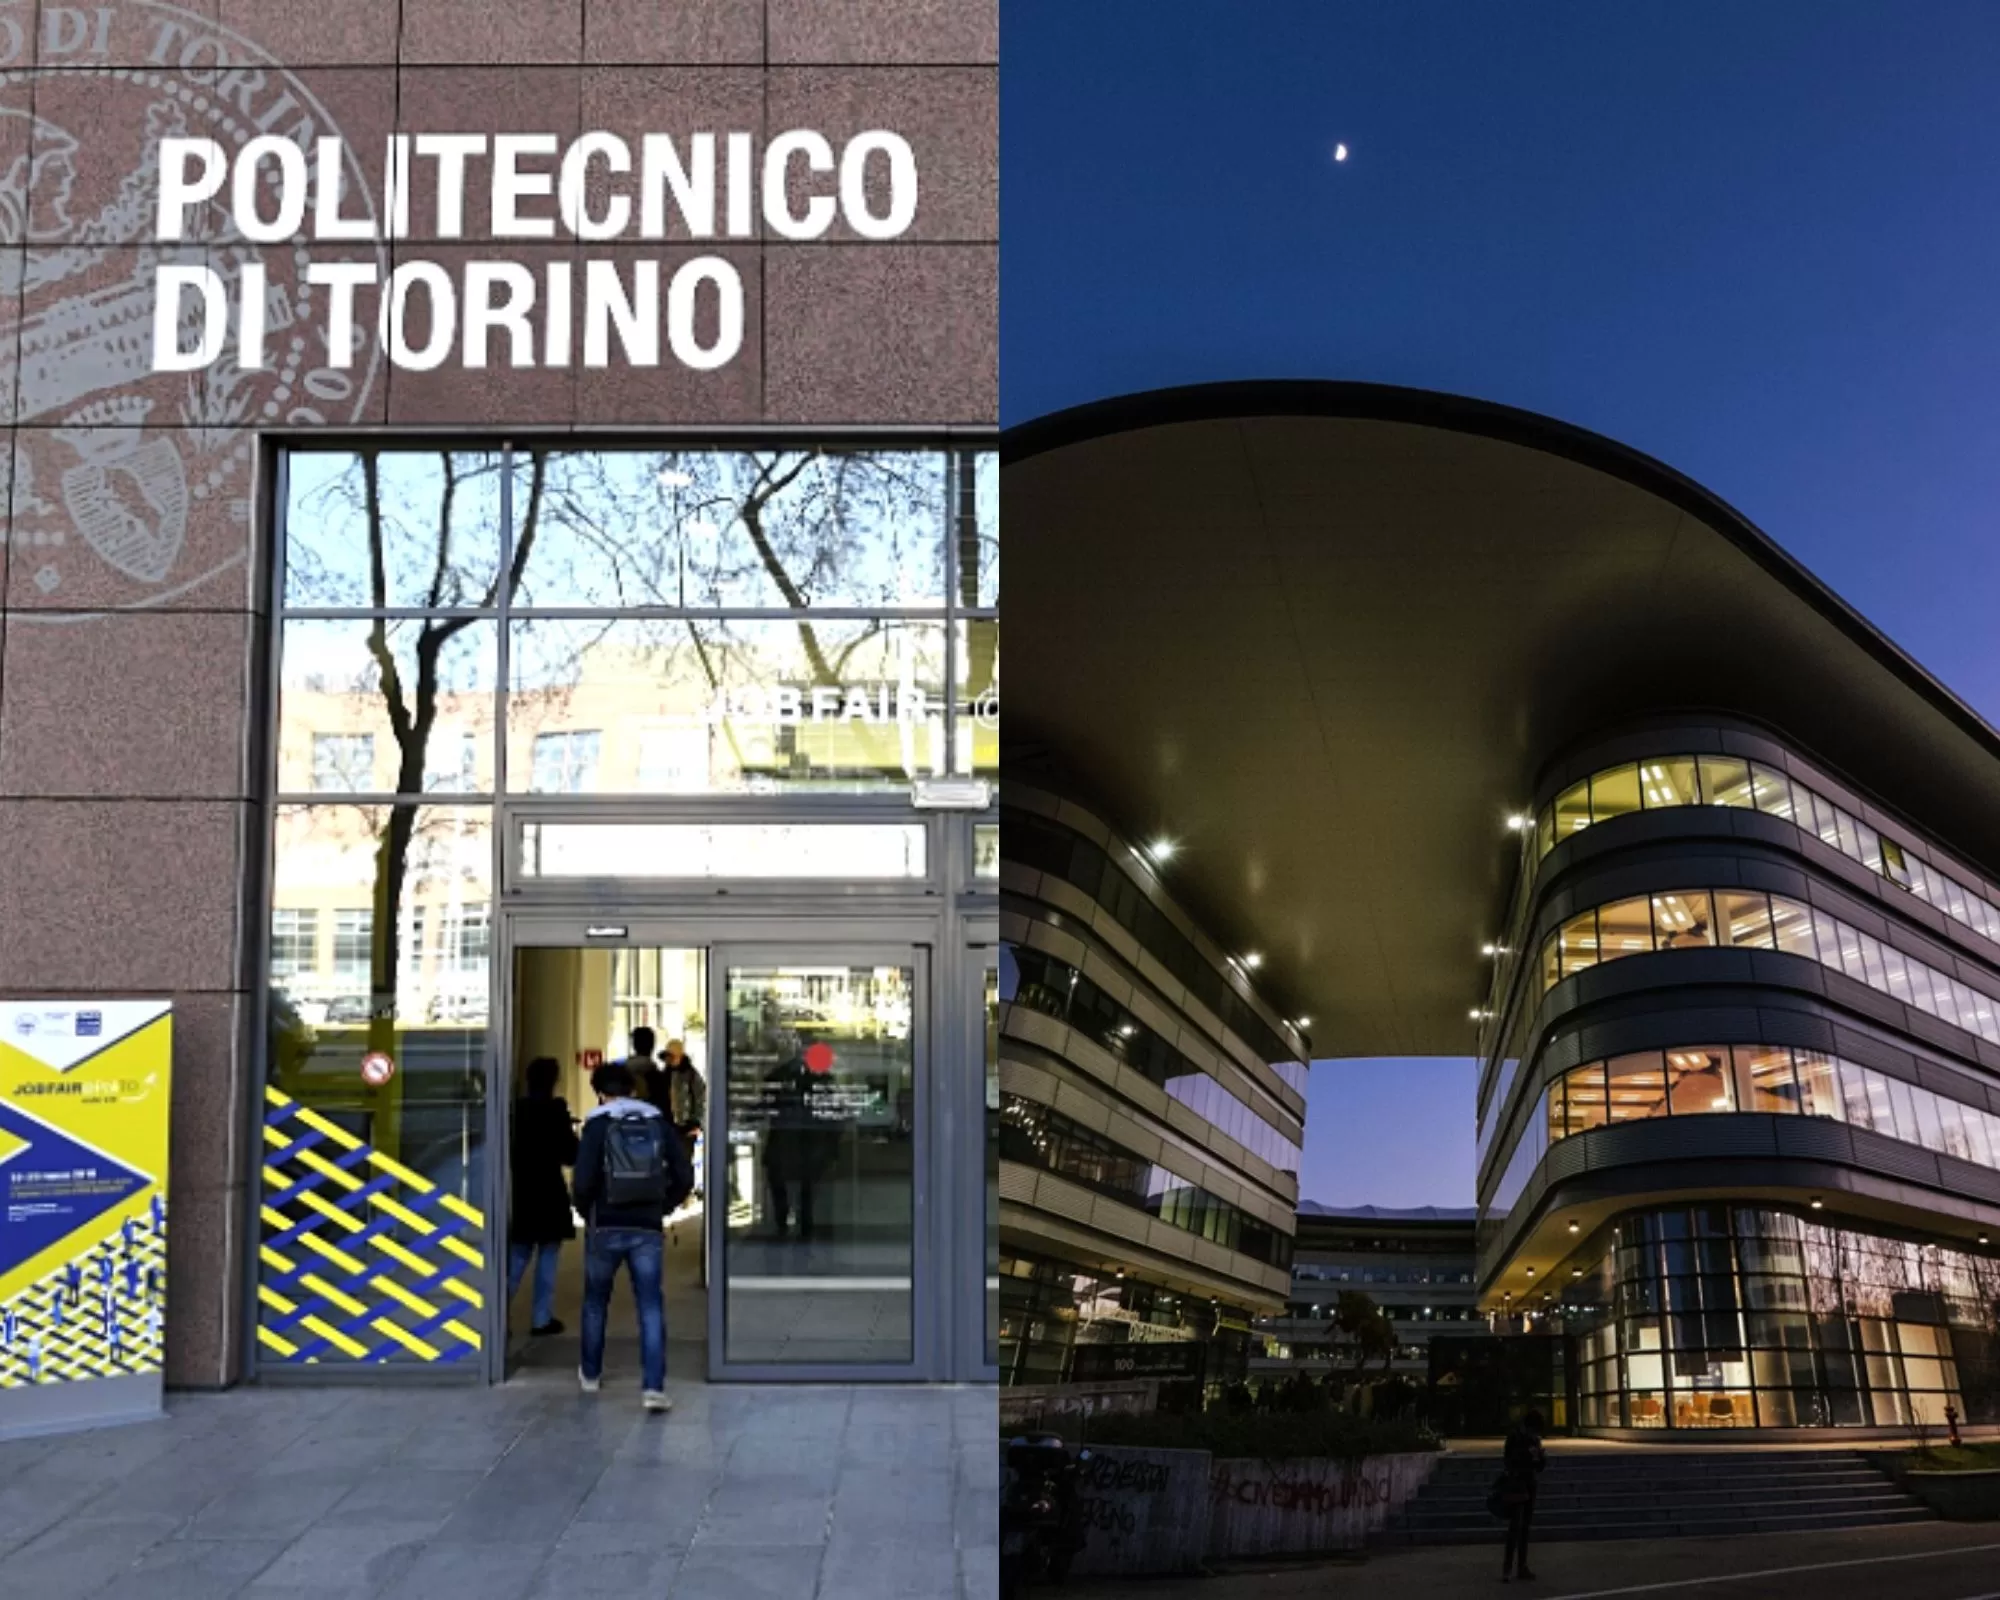 Politecnico di Torino e Università di Torino